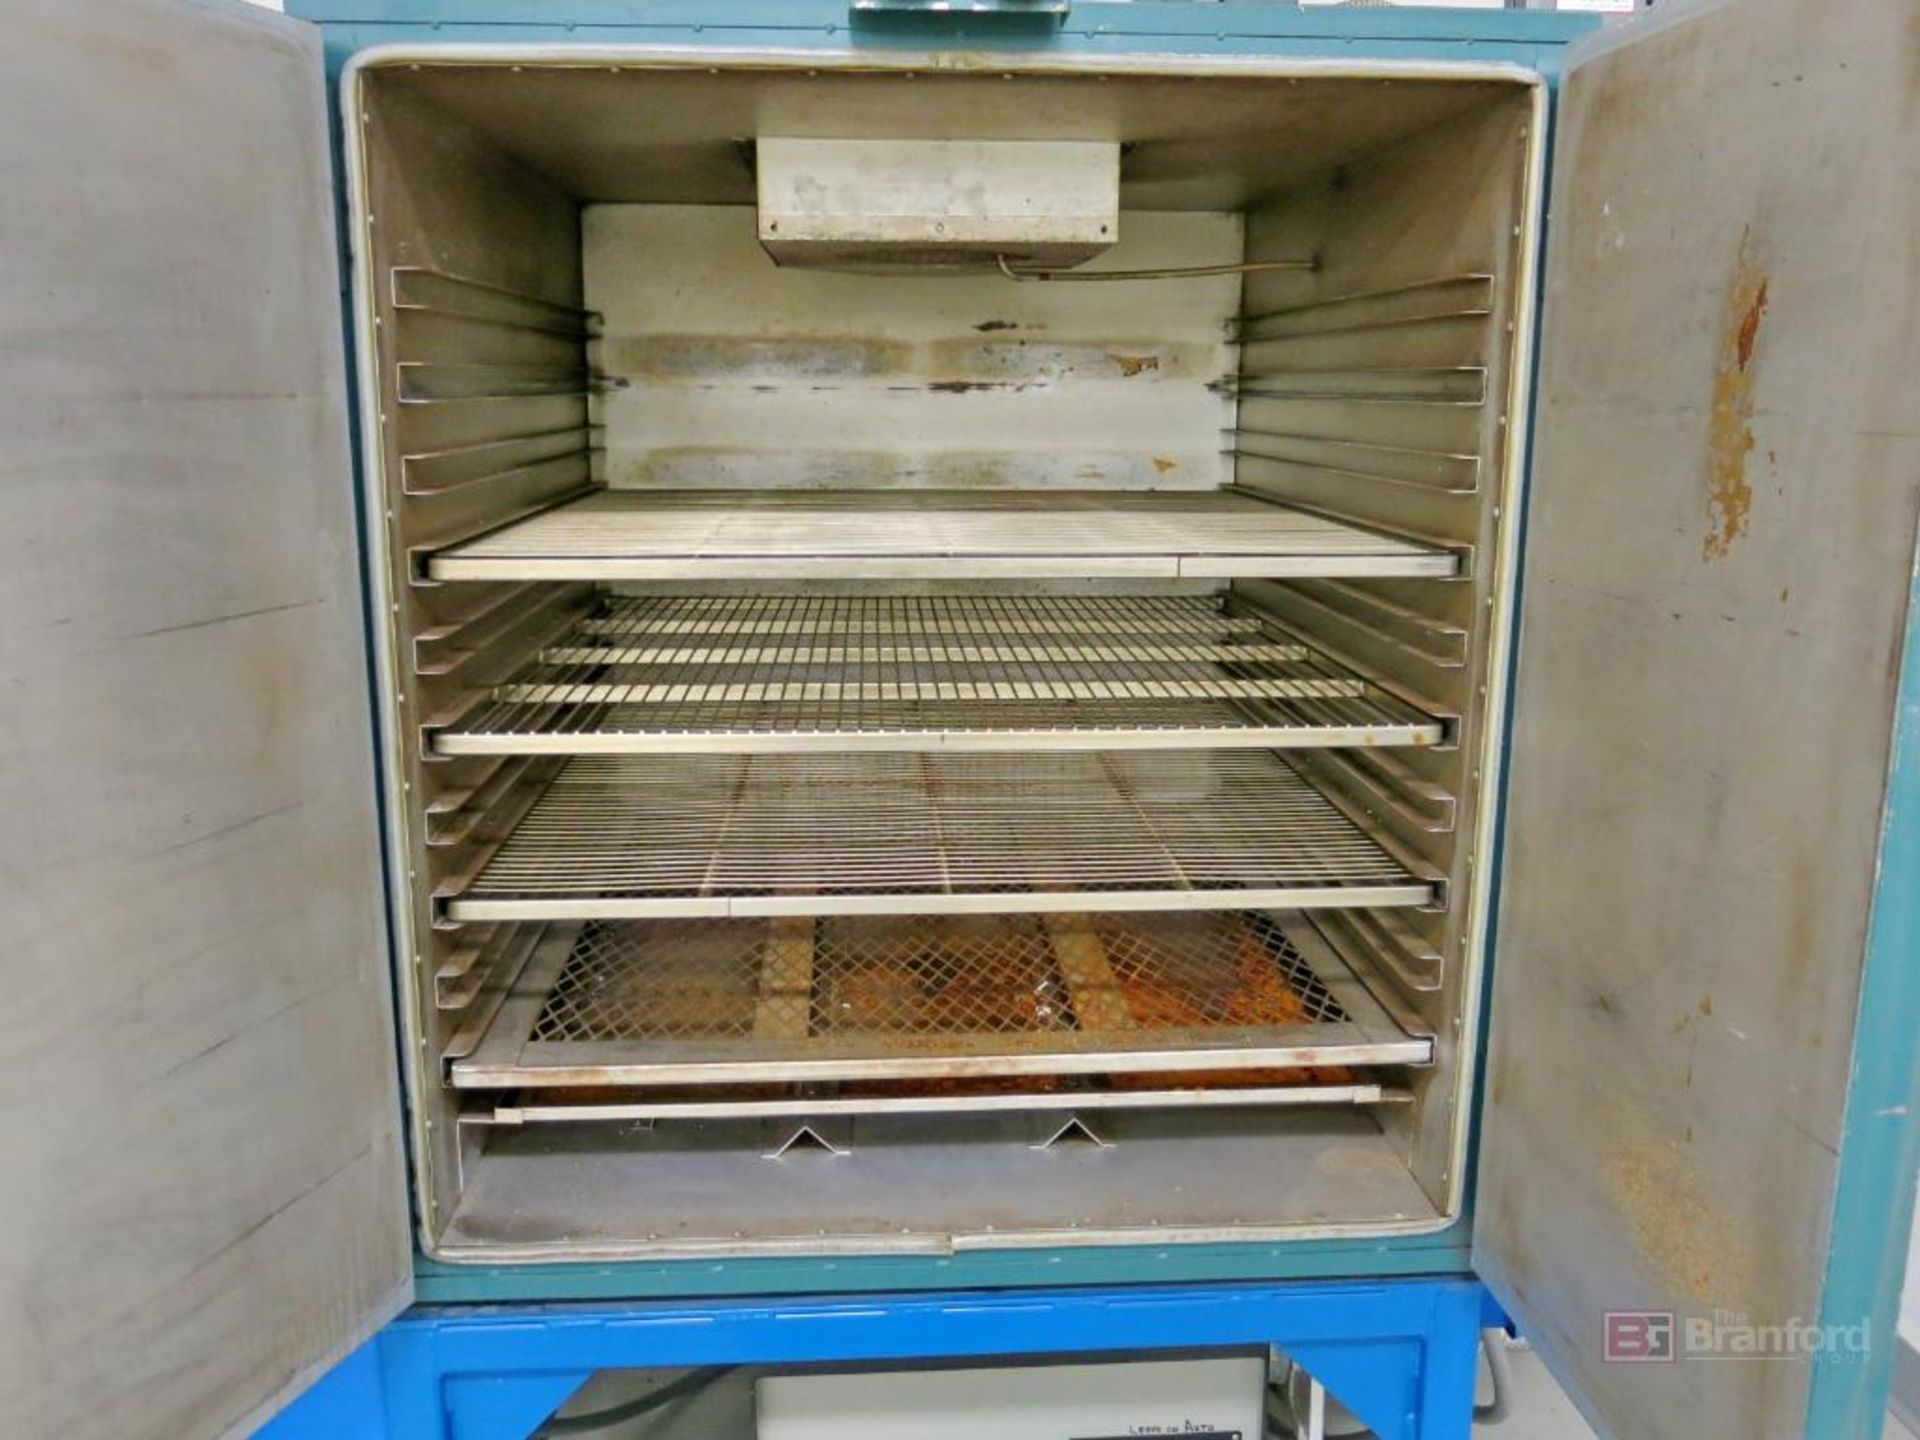 Grieve 2-Door Oven Model 333 - Image 2 of 4